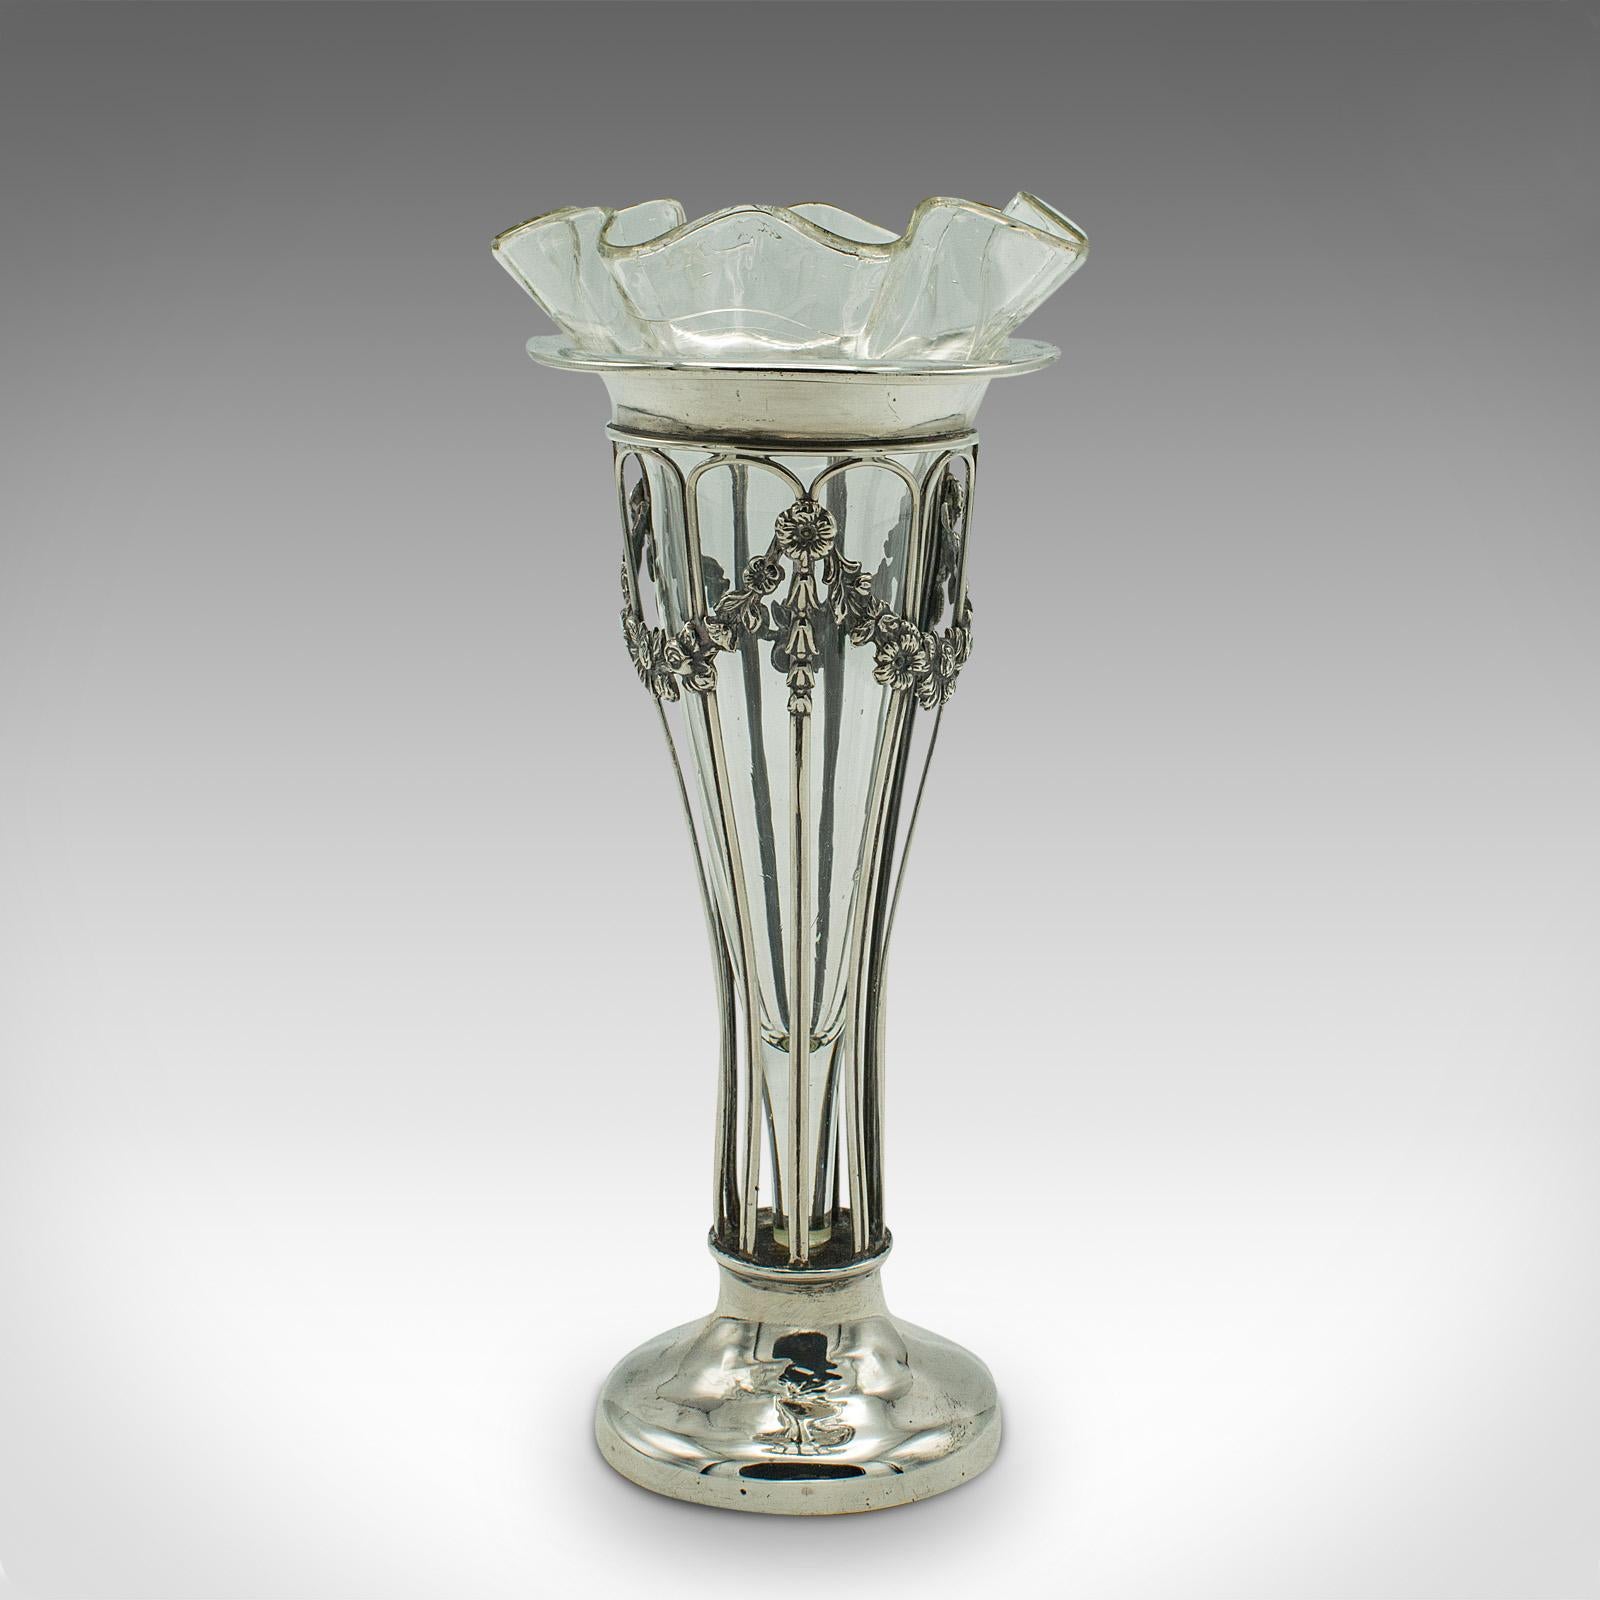 Il s'agit d'un petit vase à tige antique. Un vase décoratif anglais en argent et en verre, datant de la période édouardienne, poinçonné en 1906.
 
Forme expressive Art nouveau et finition attrayante pour ce vase de petite taille.
Présente une patine